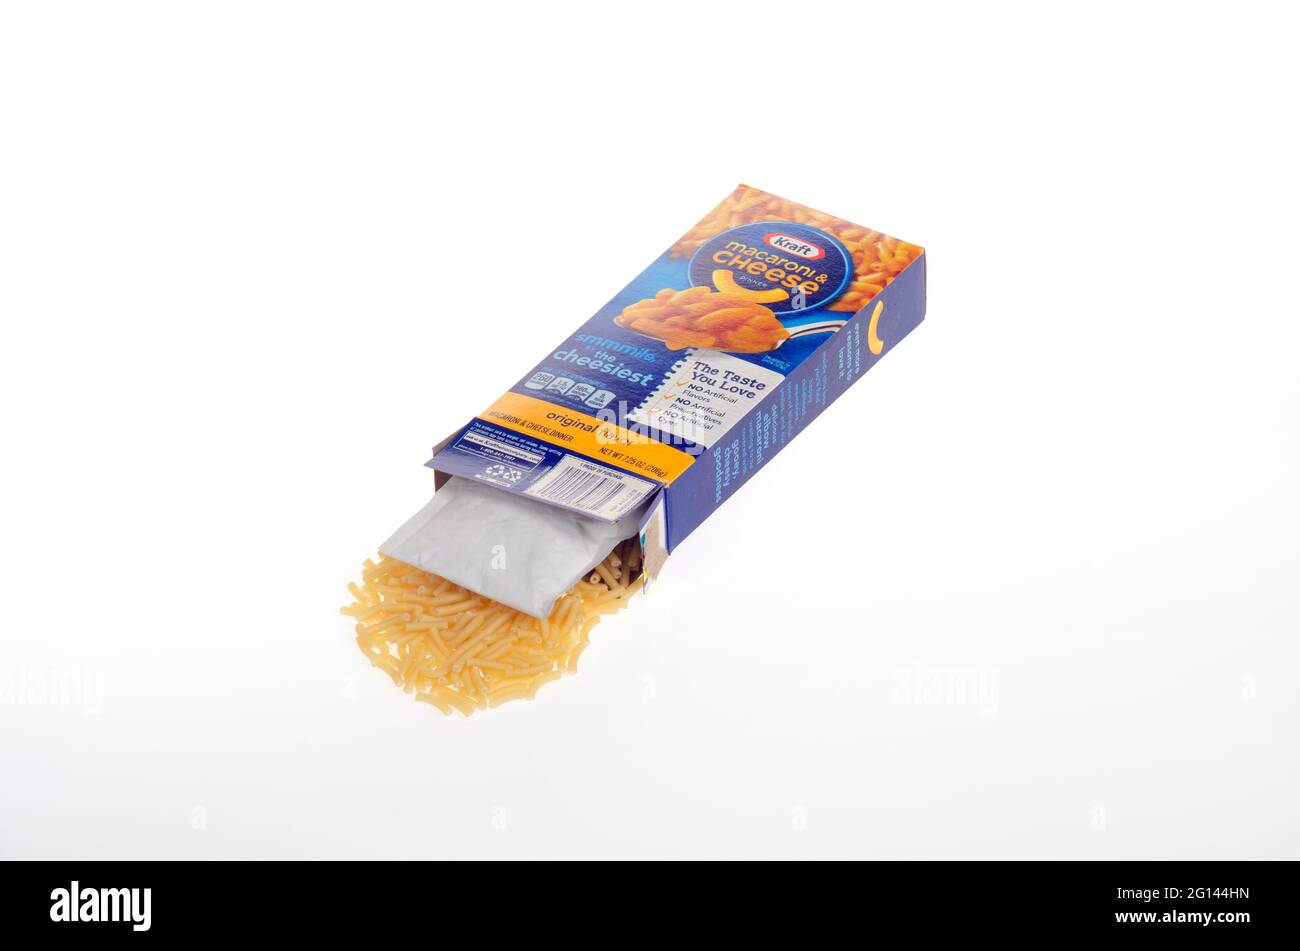 Caja abierta Kraft Macaroni & Cheese con codos de pasta y paquete de mezcla de queso sobre fondo blanco Foto de stock